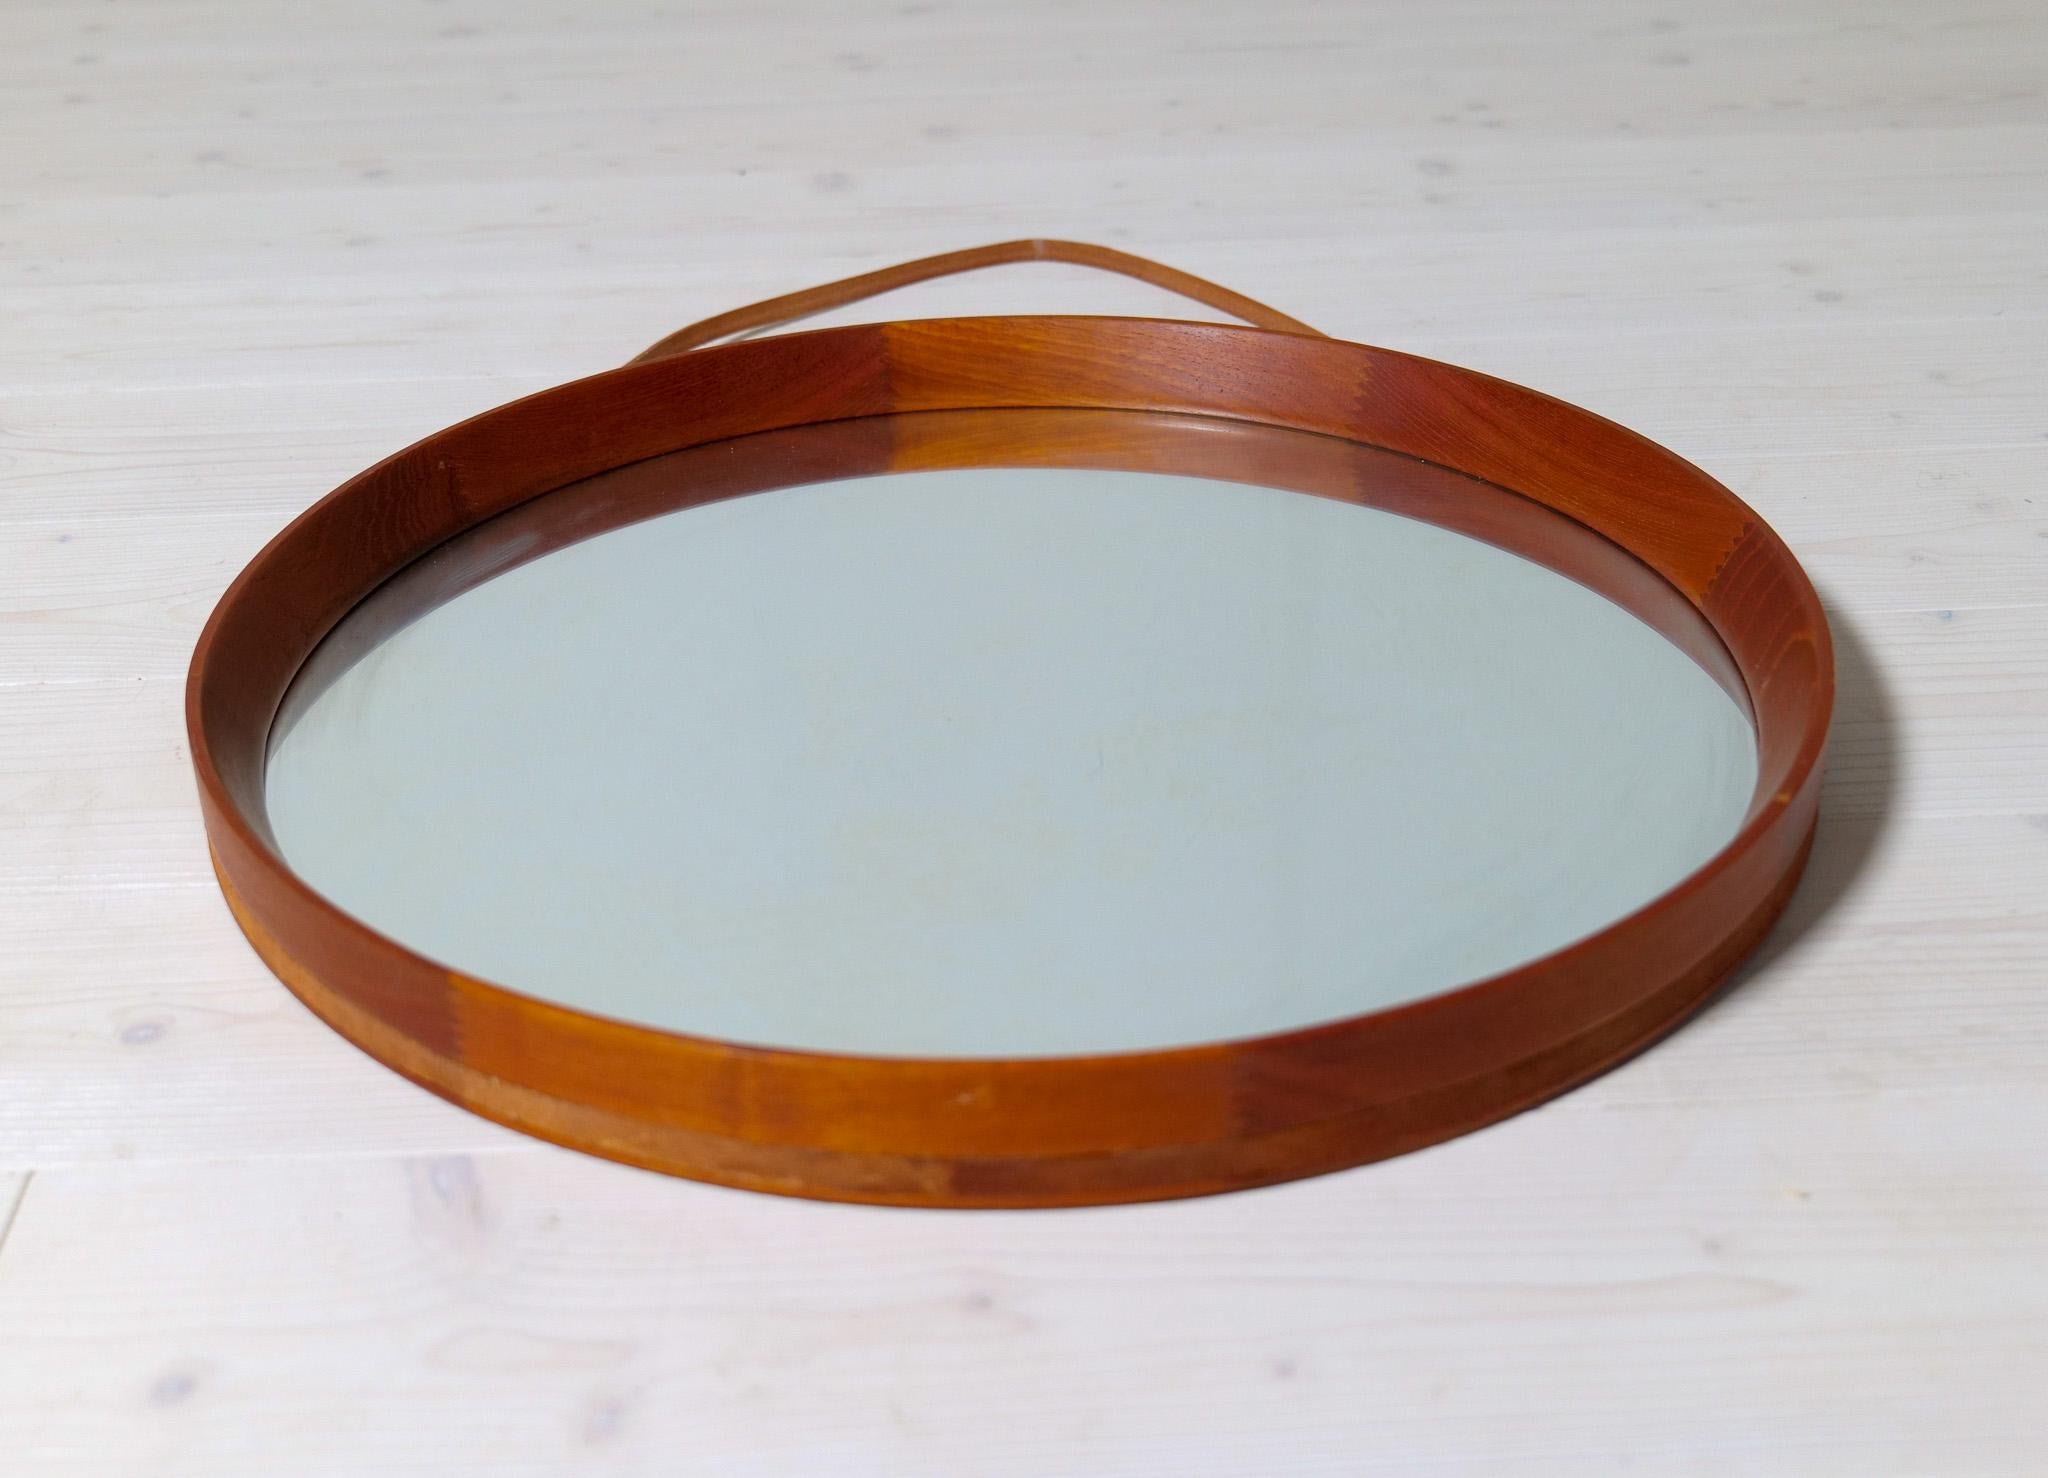 Mid-20th Century Midcentury Modern Round Mirror in Leather & Teak by Glas & Trä Hovmantorp Sweden For Sale